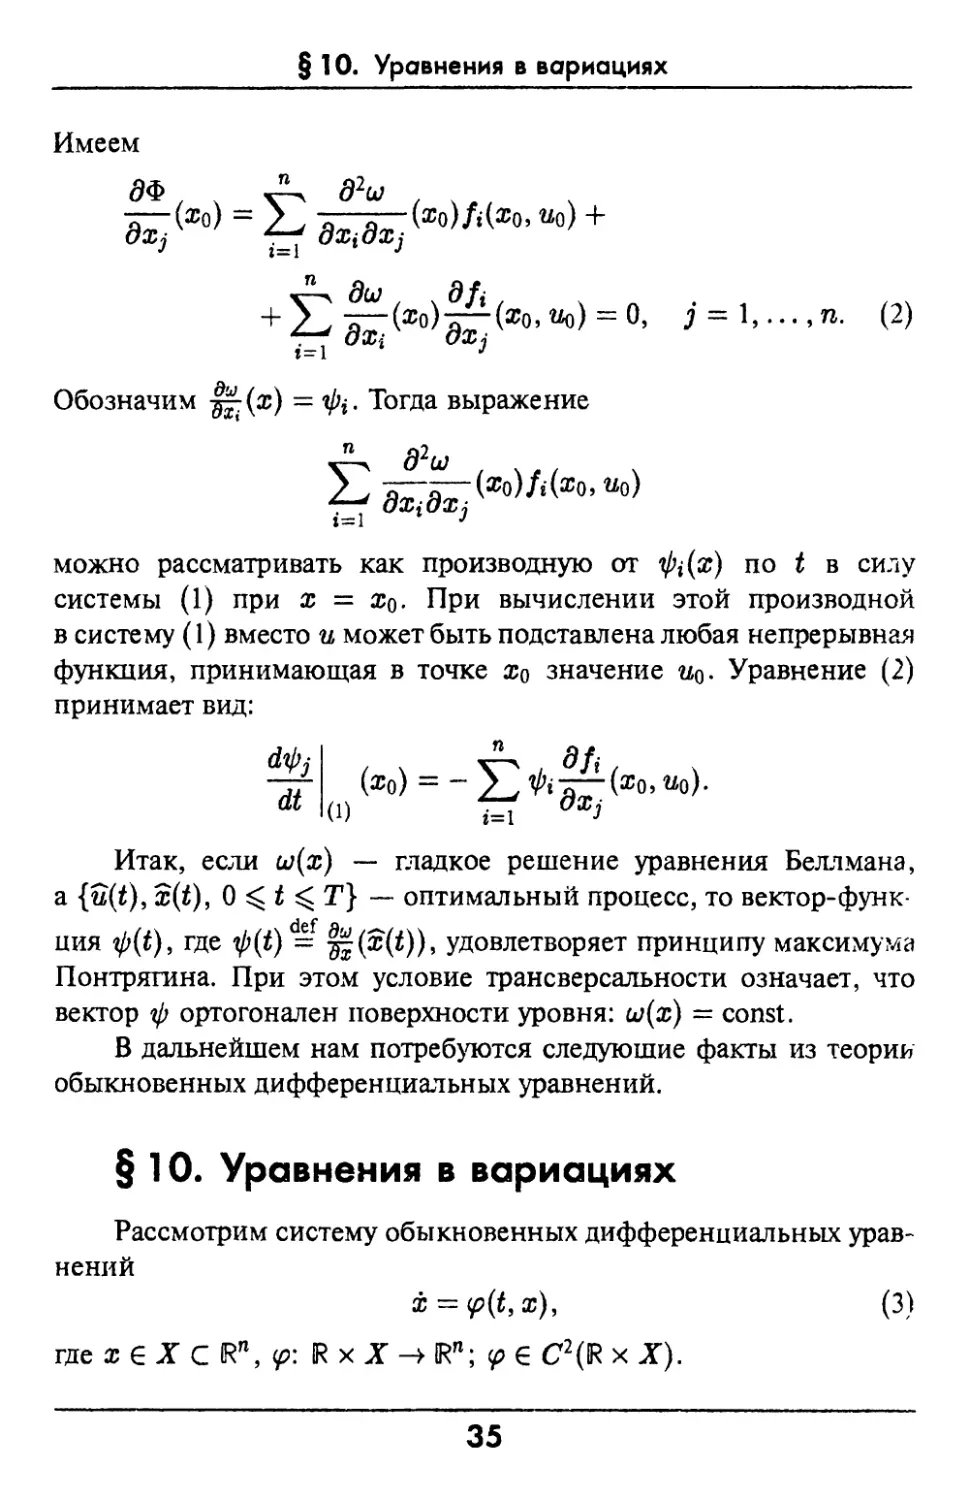 §10. Уравнения в вариациях